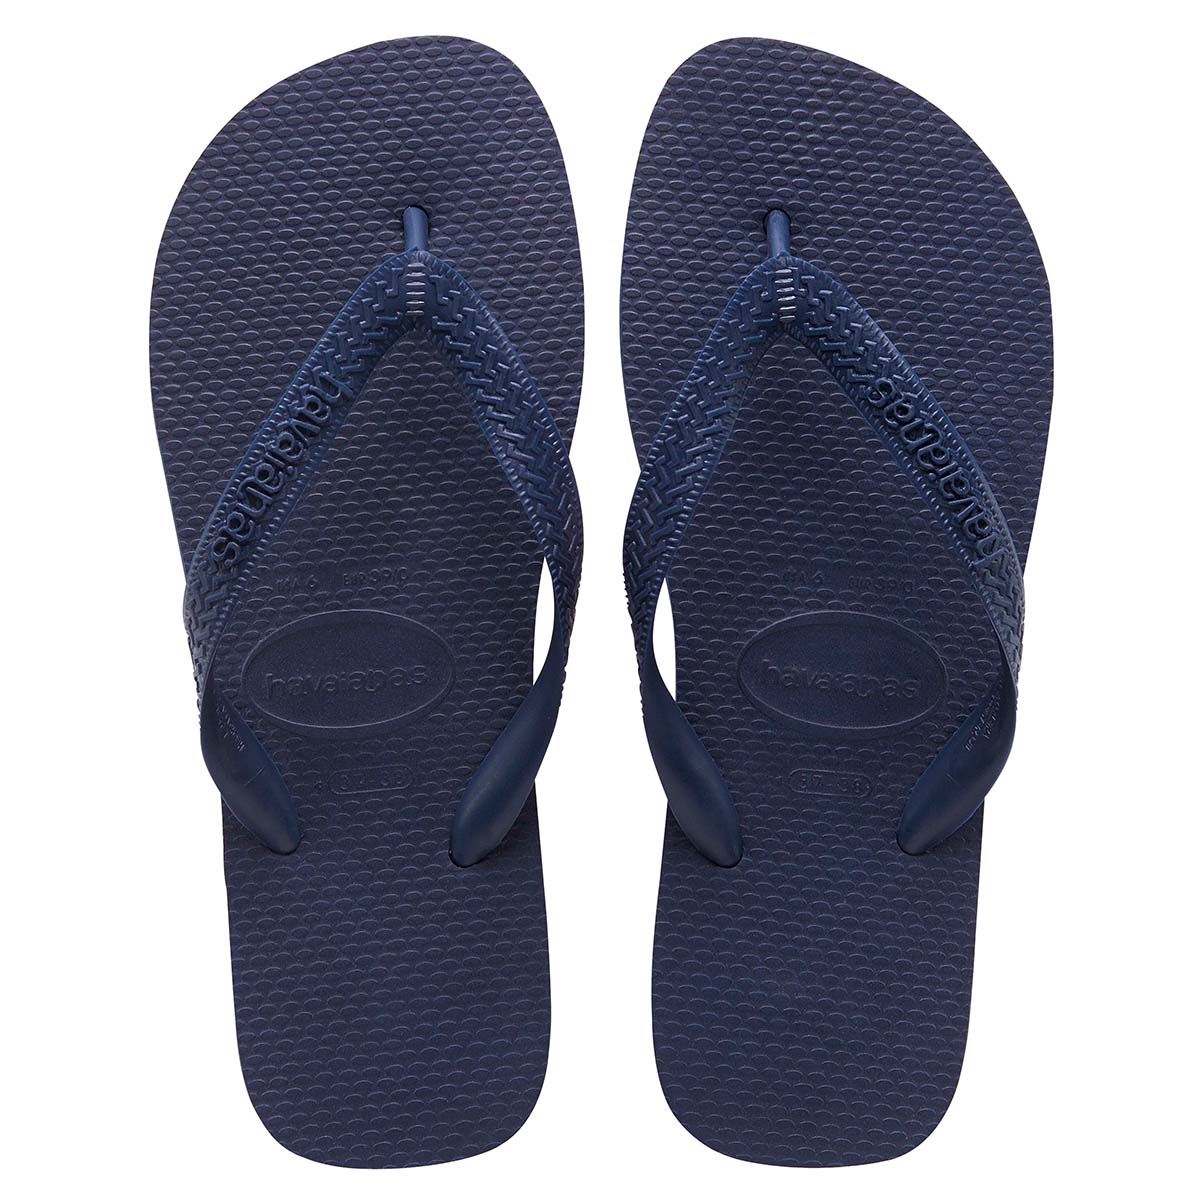 Havaianas Top Unisex Erwachsene Sandalen Zehentrenner Badelatschen 4000029 Blau